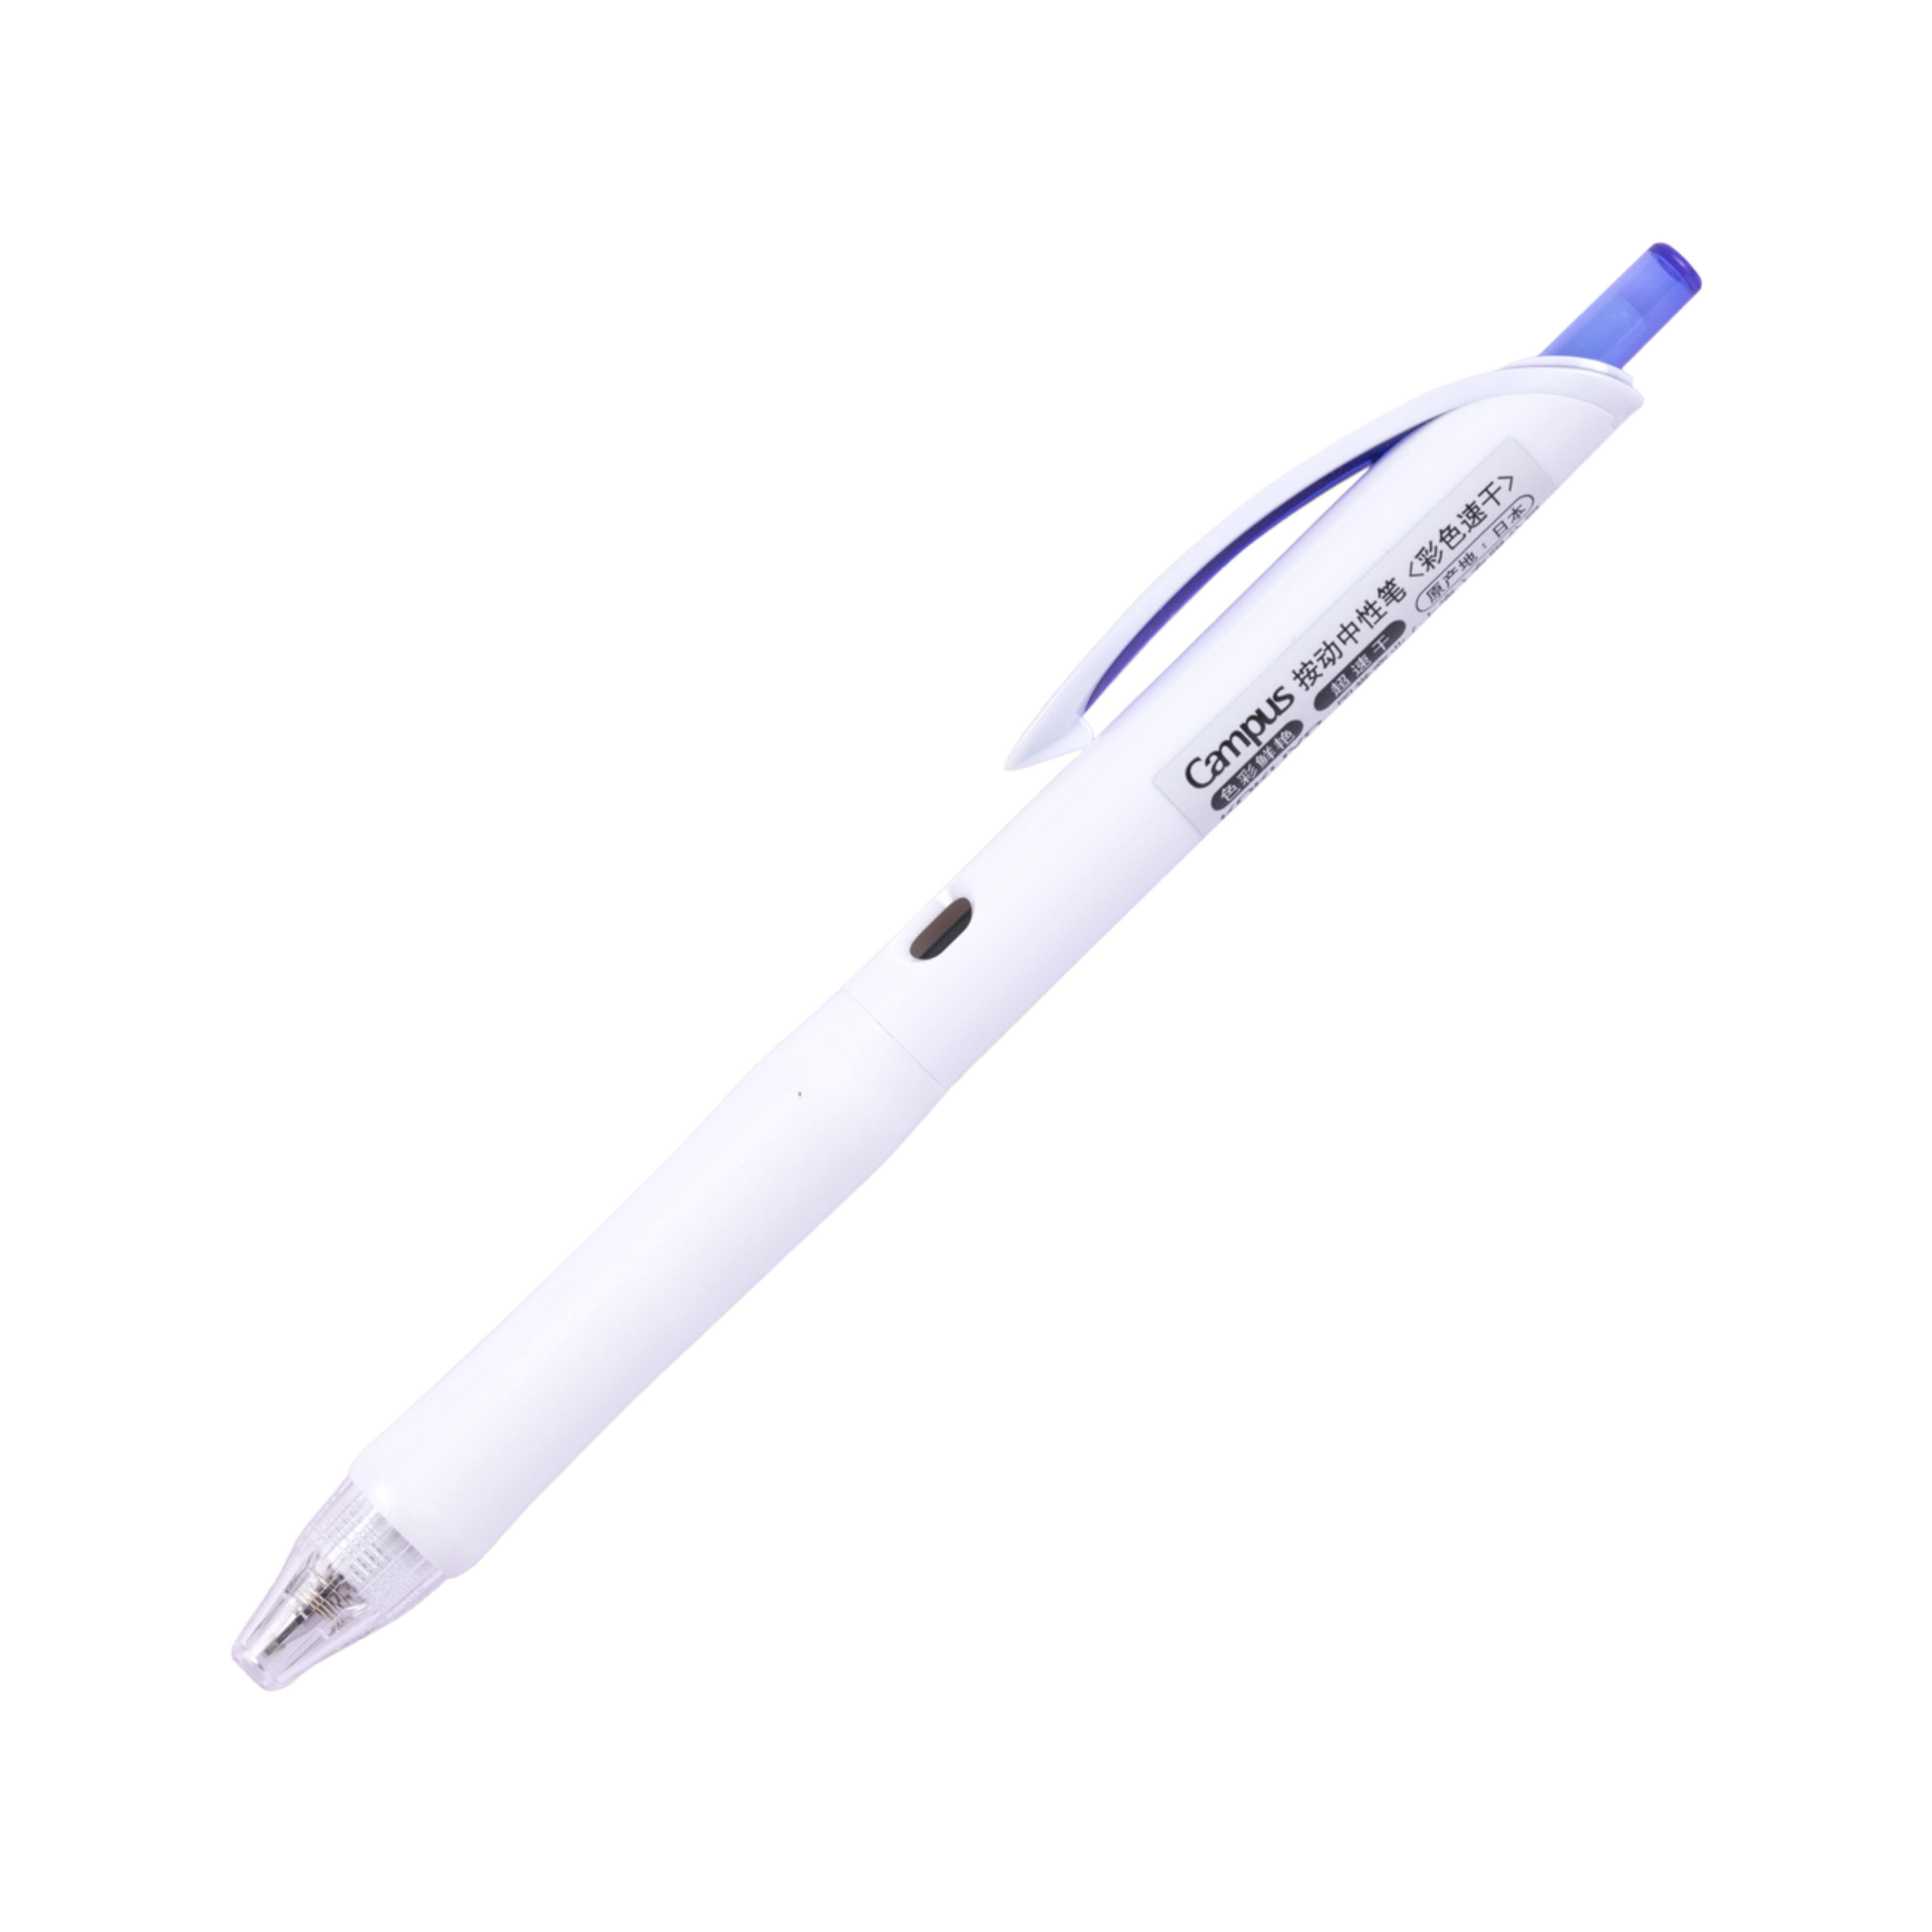 Kokuyo Campus viviDRY Retractable Gel Pen - 0.5 mm - Blue